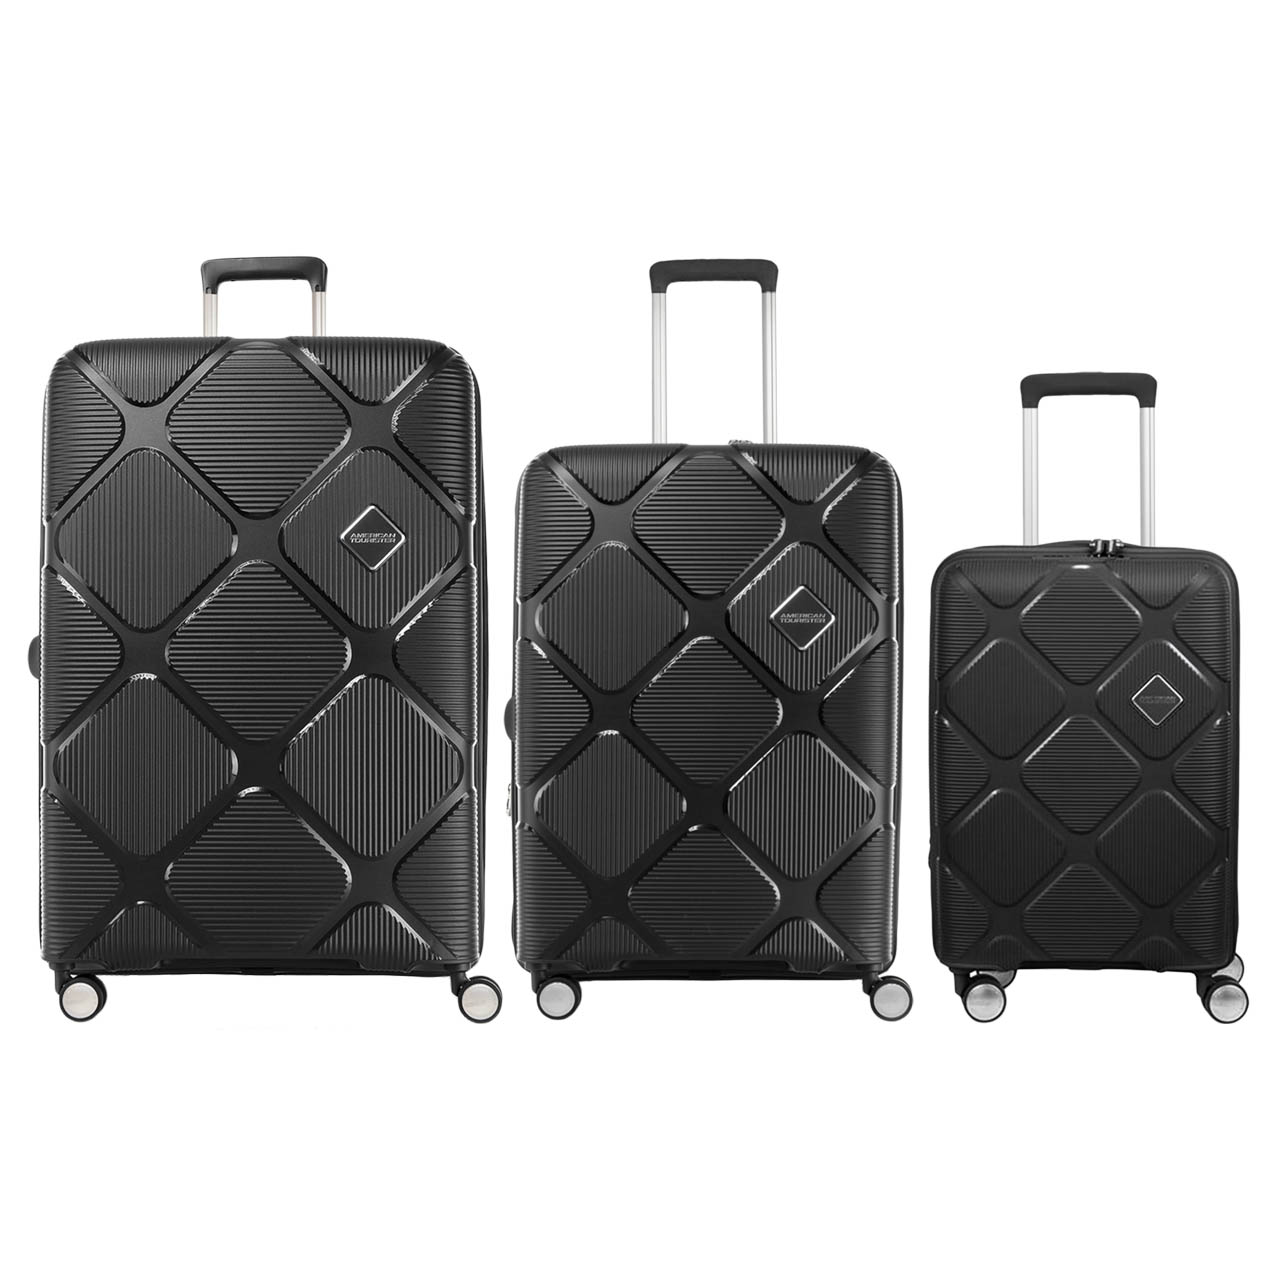 مجموعه سه عددی چمدان امریکن توریستر مدل INSTAGON HJ4 -  - 5